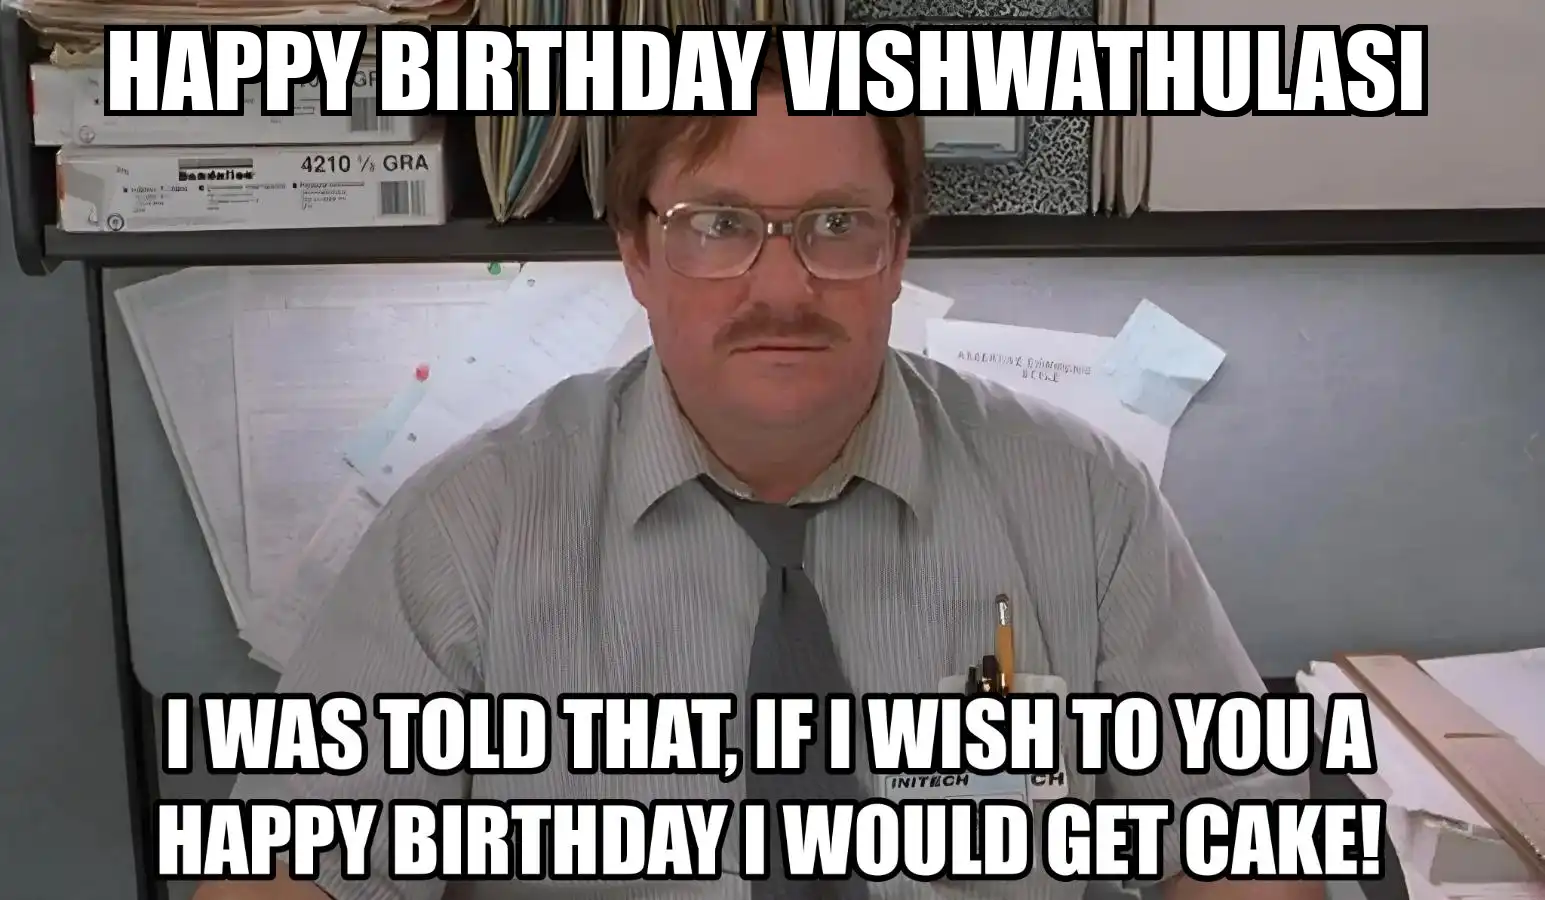 Happy Birthday Vishwathulasi I Would Get A Cake Meme